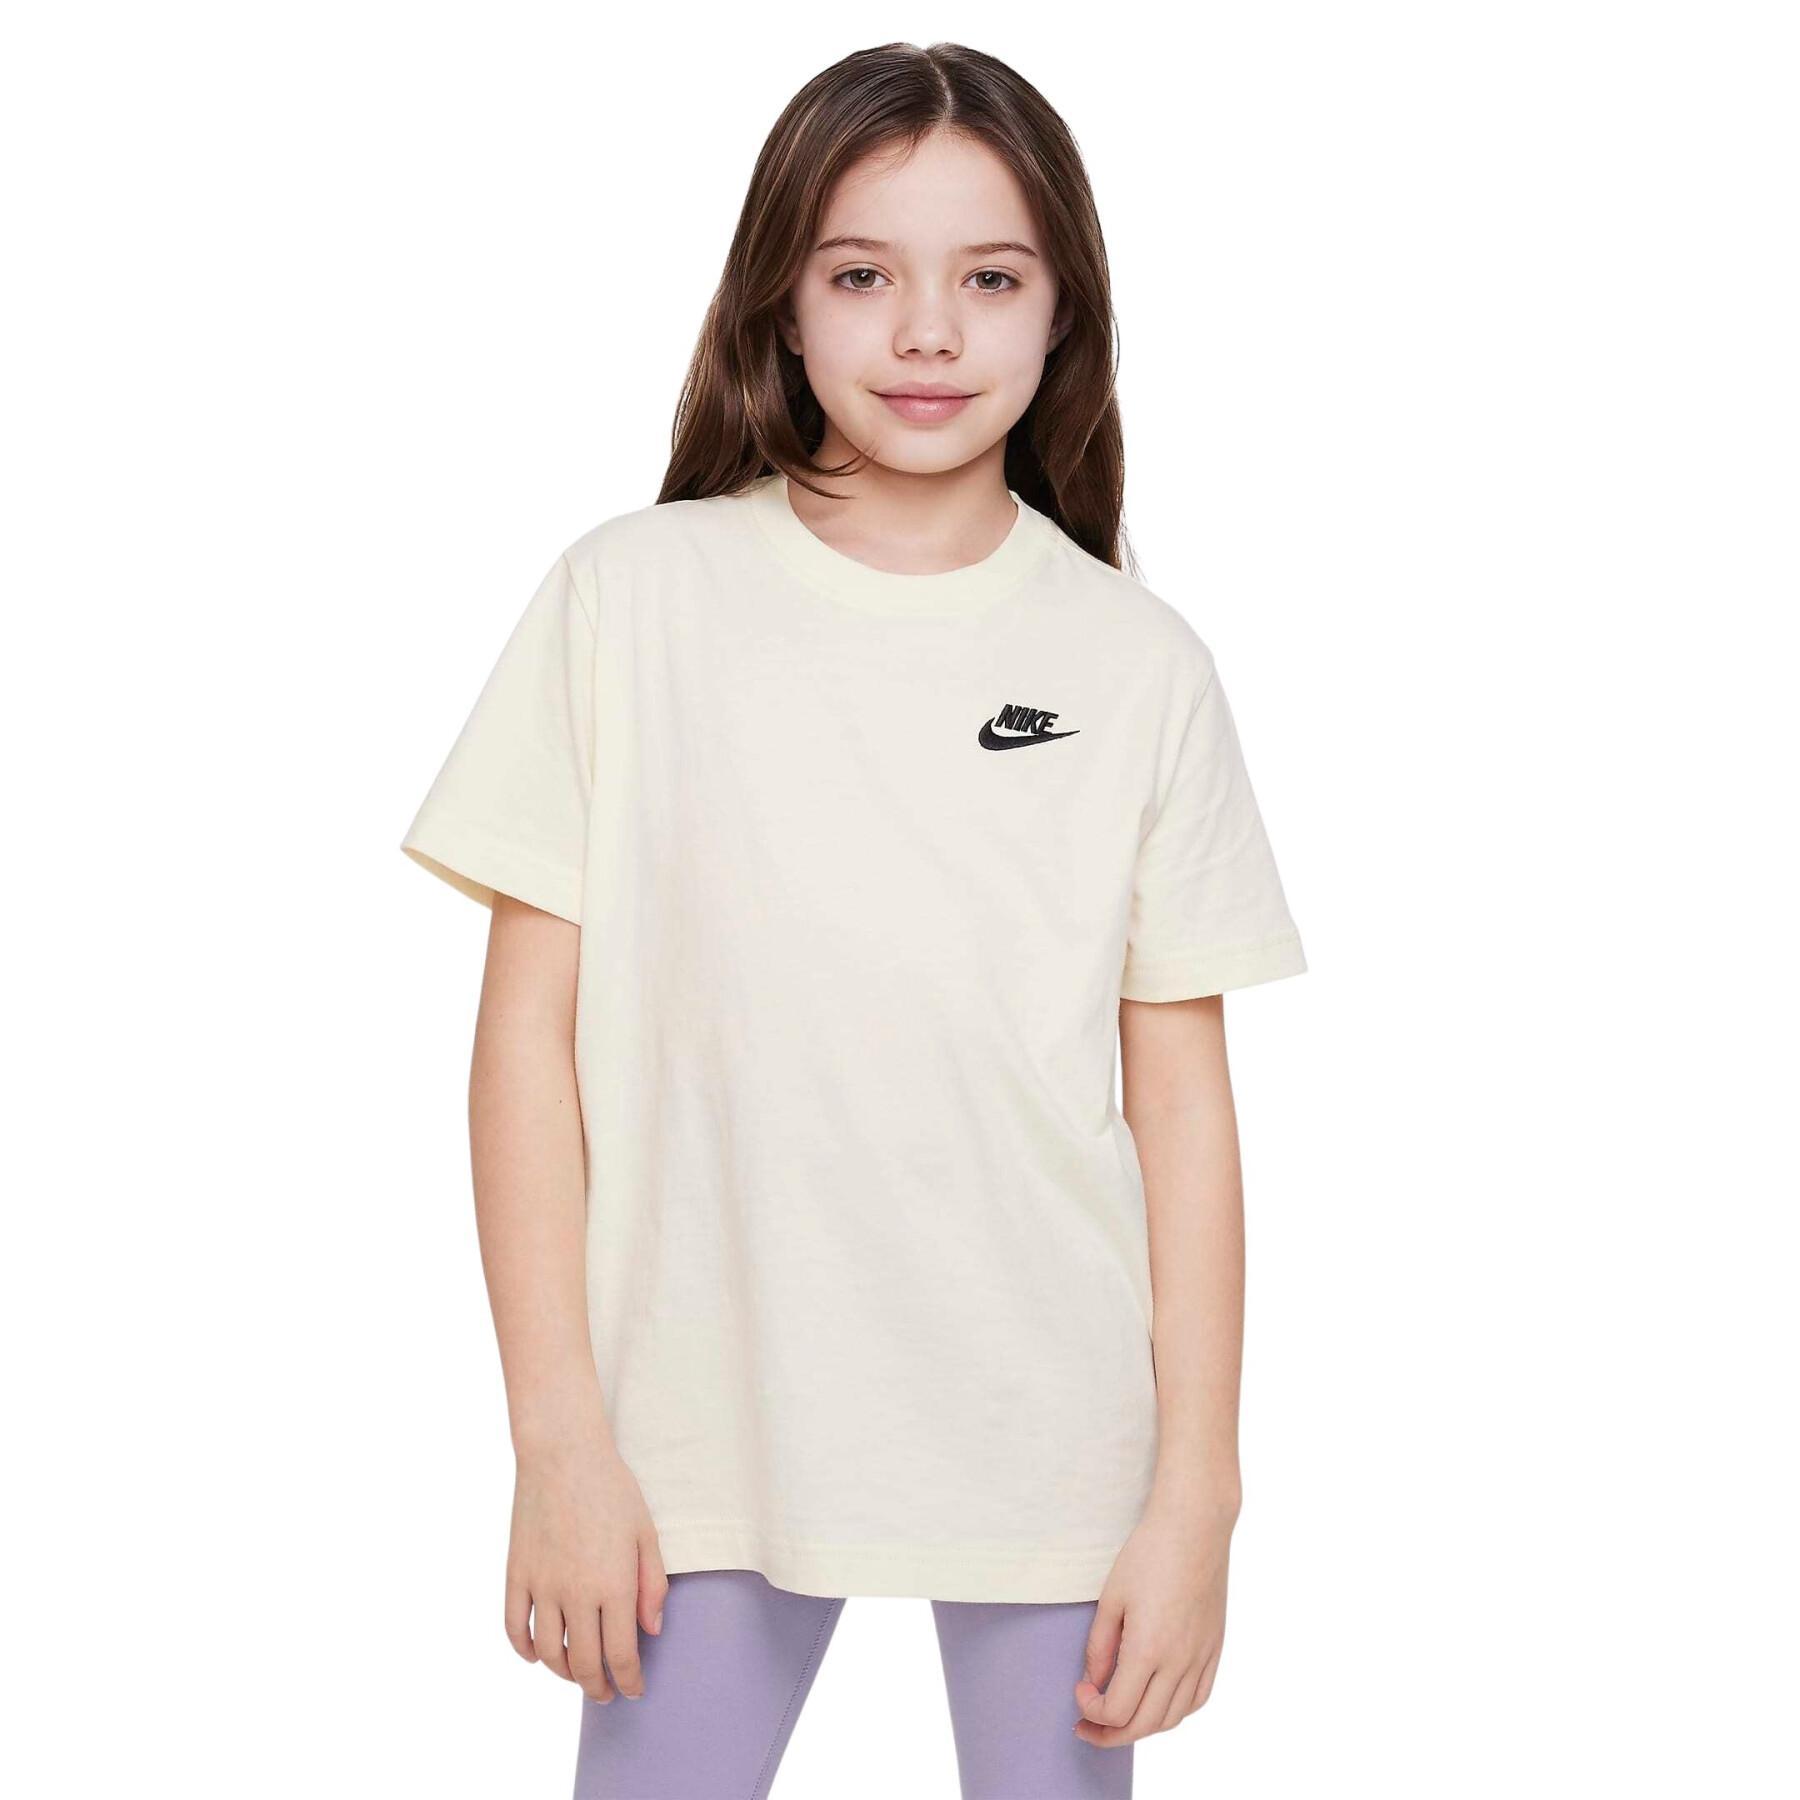 T-shirt de rapariga Nike Club